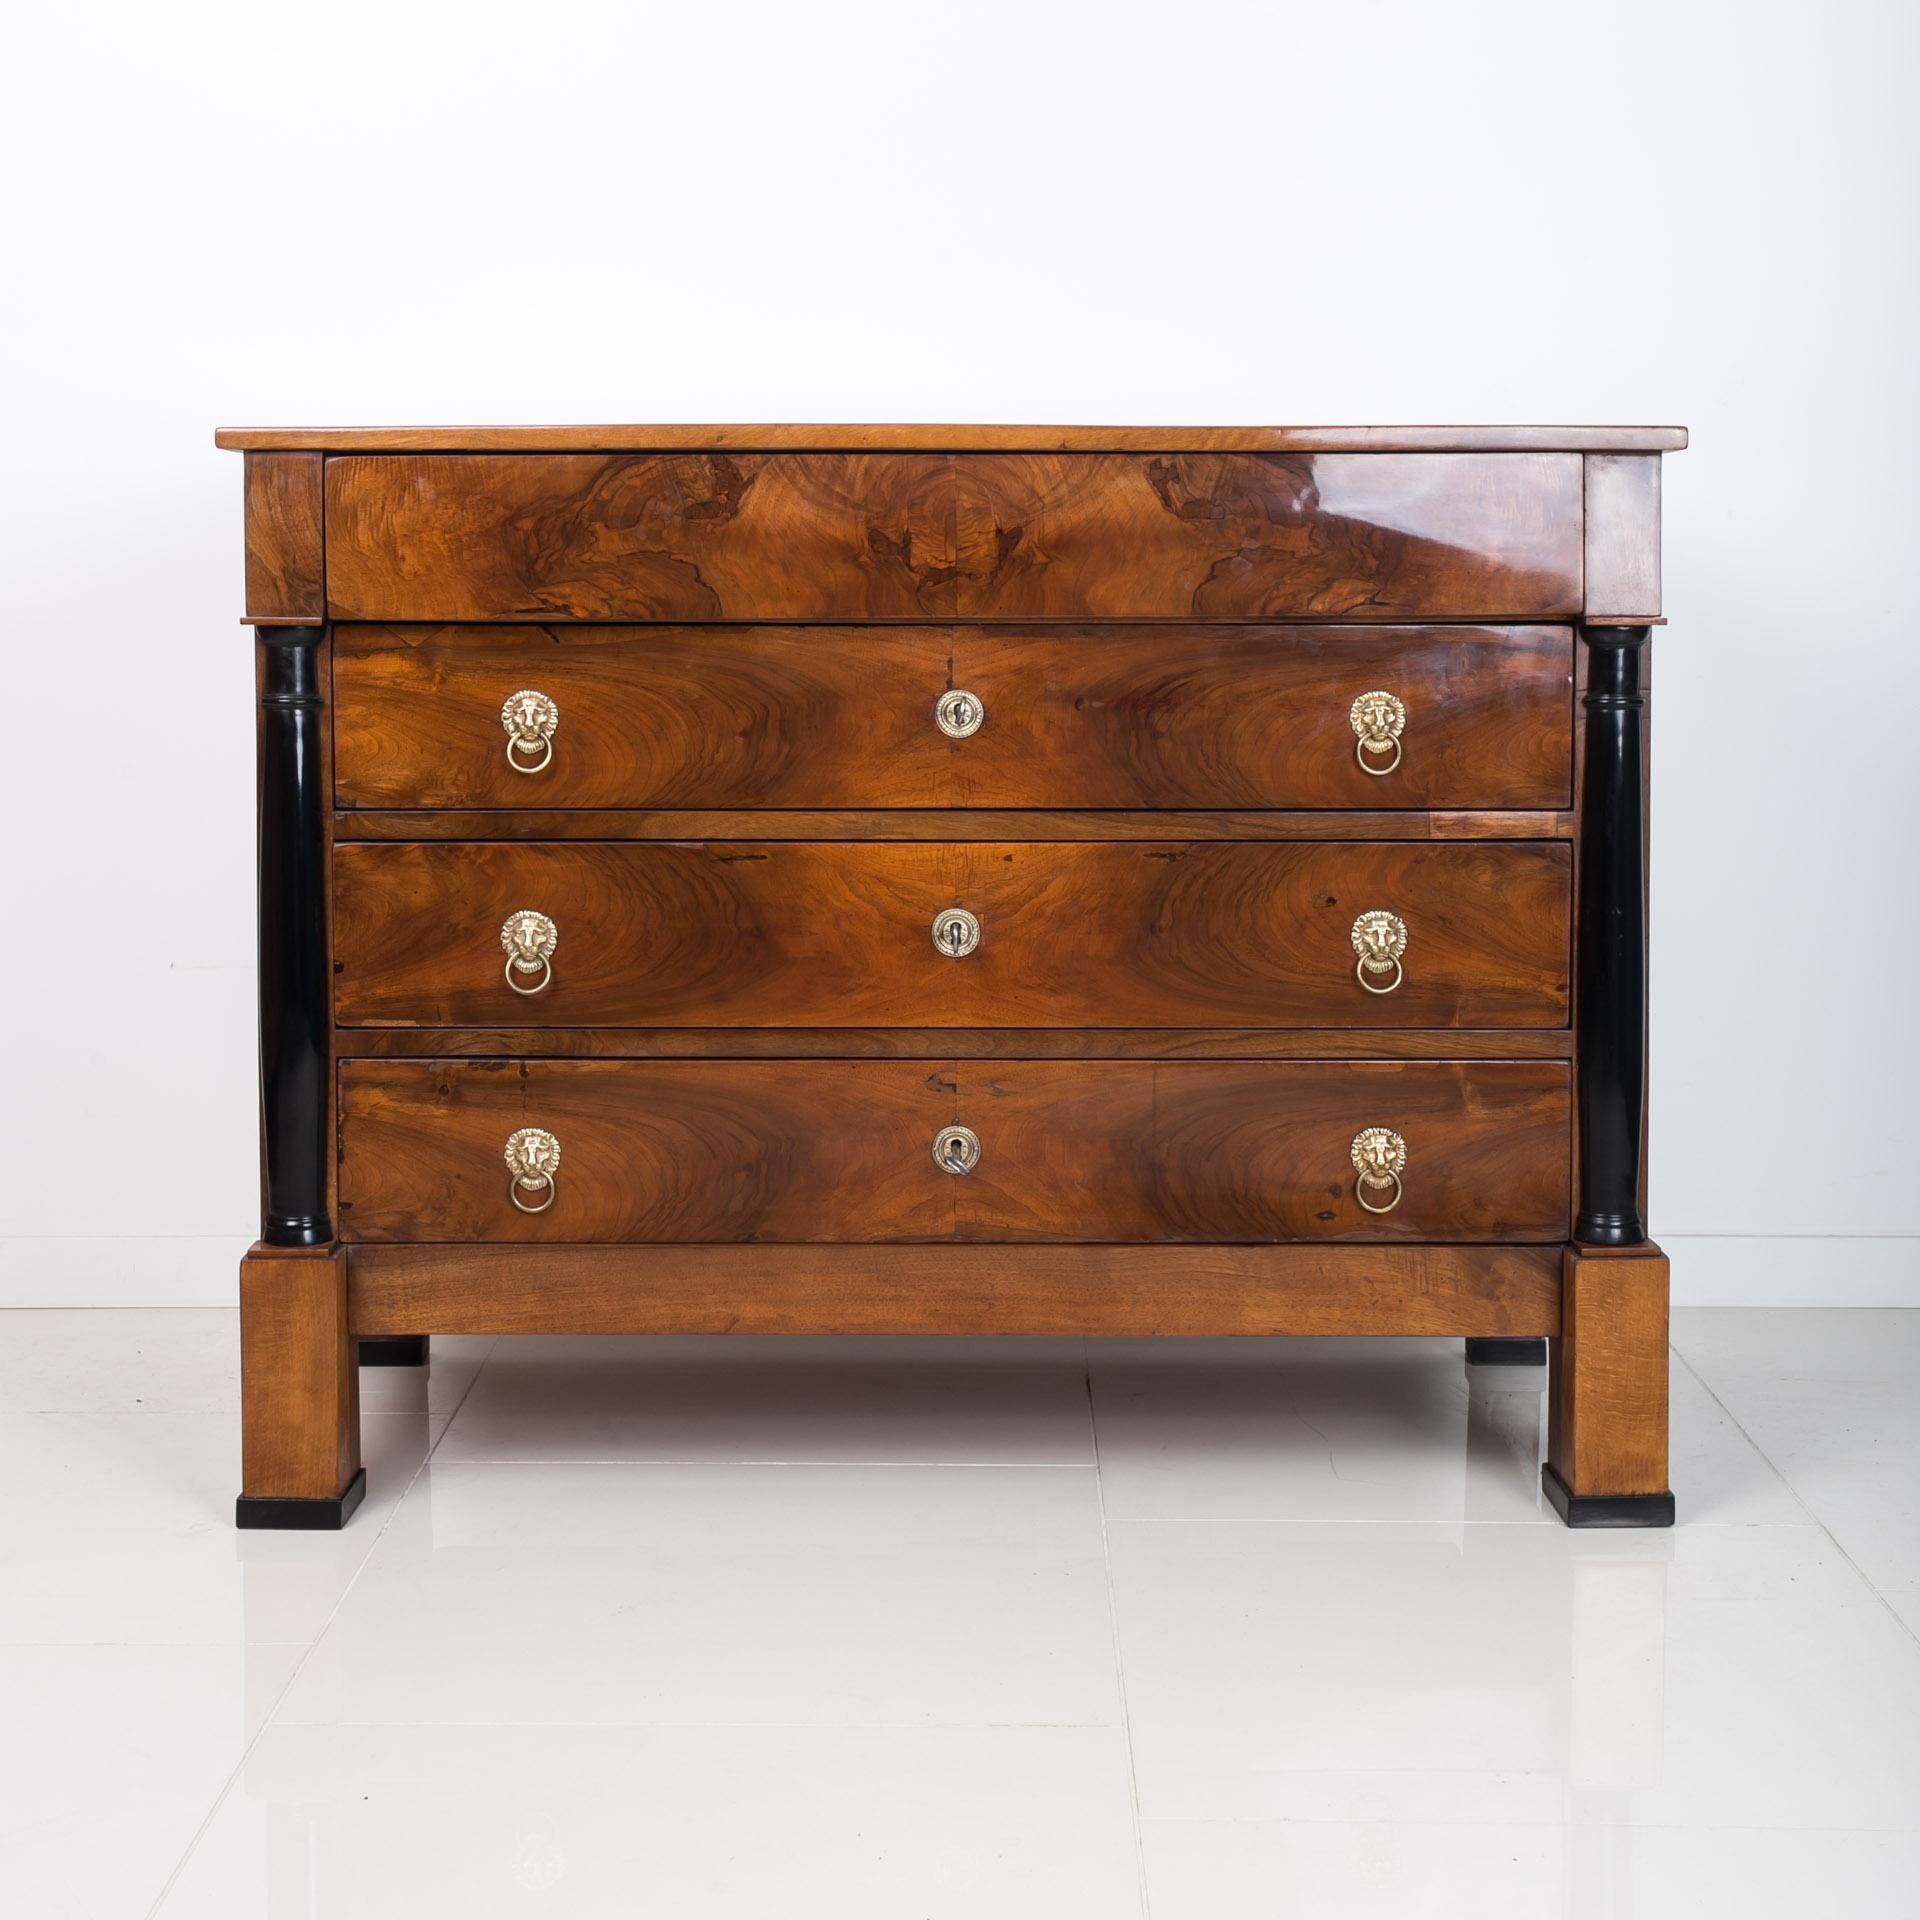 Commode Biedermeier de la première moitié du XIXe siècle, environ 1830 - 1850. Ce meuble provient de France. Il est plaqué d'un beau noyer. Il a fait l'objet d'une rénovation minutieuse dans notre atelier, au cours de laquelle la structure a été